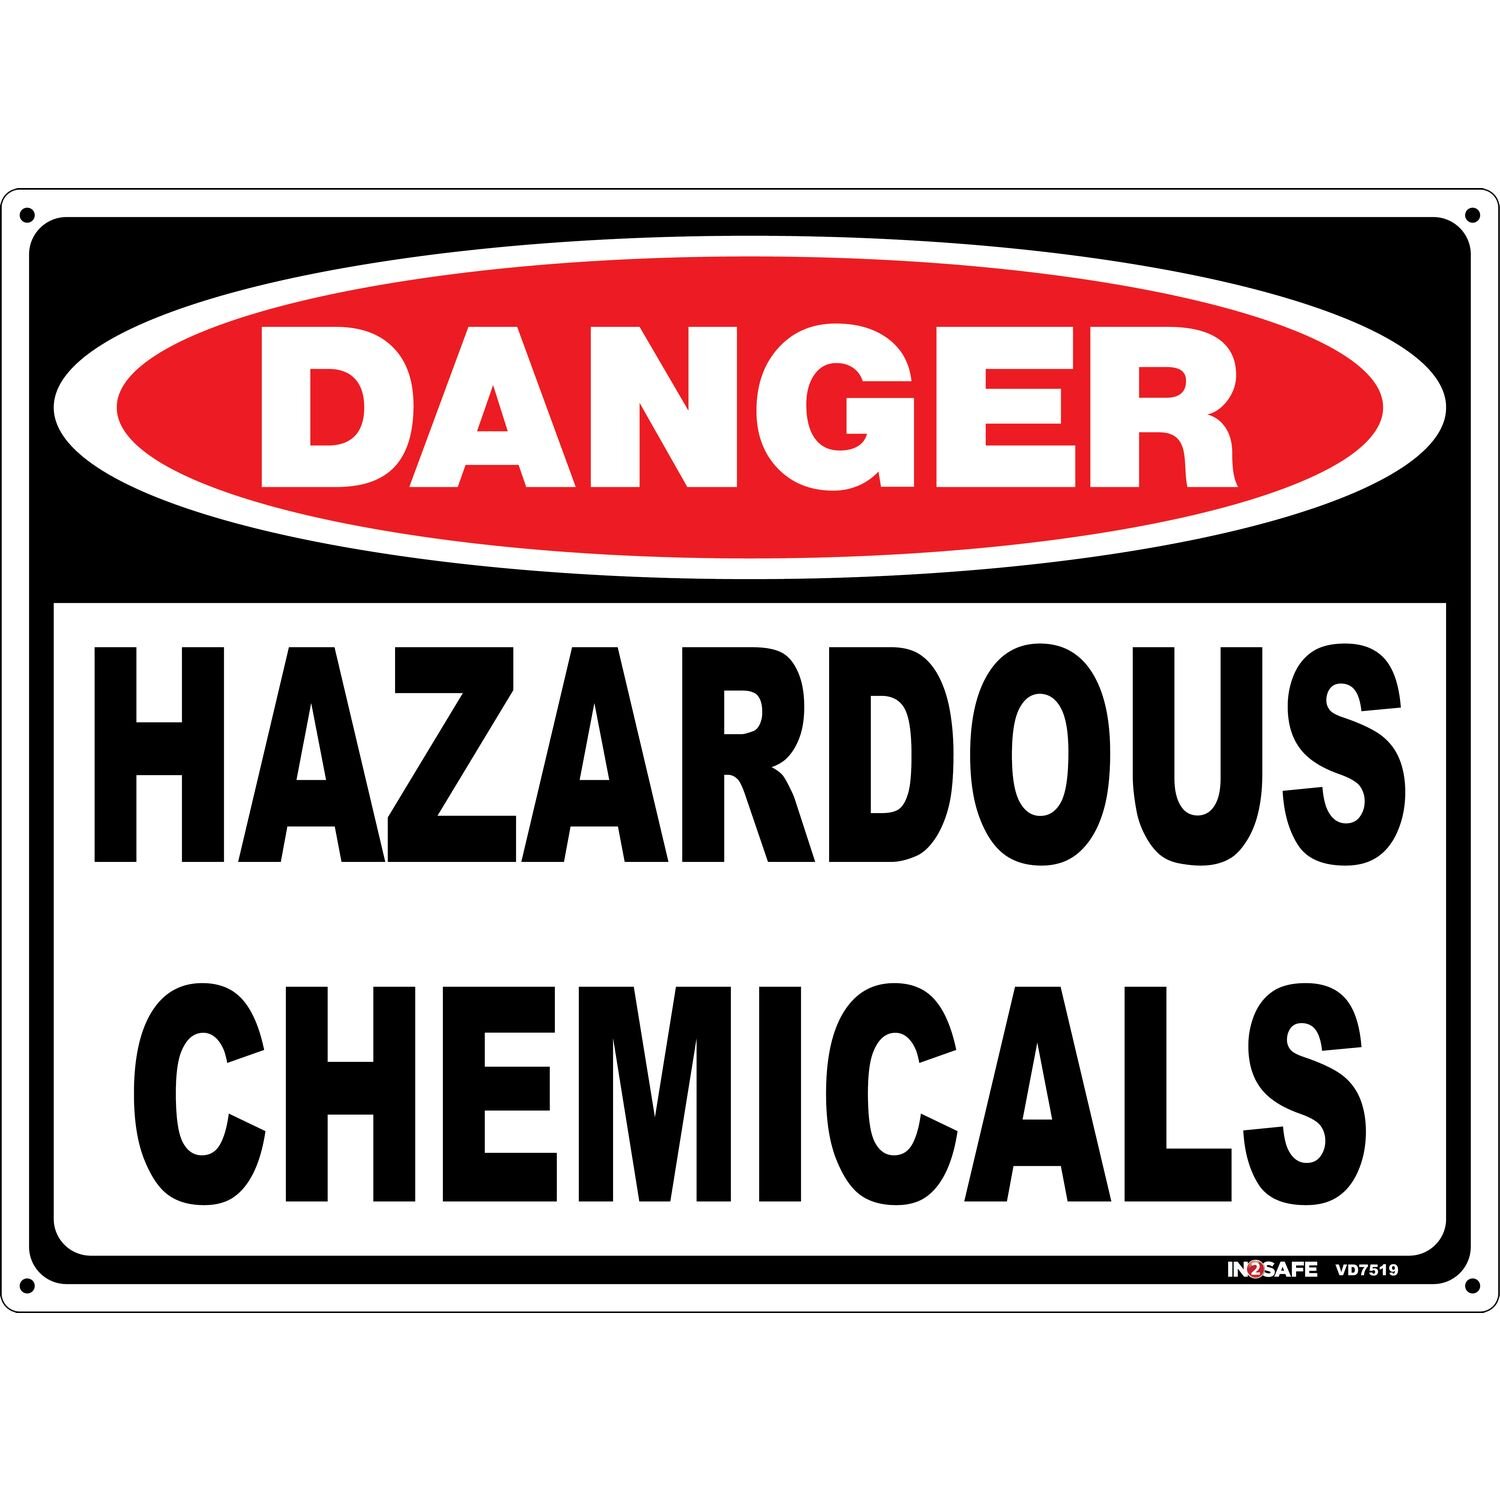 DANGER Hazardous Chemicals